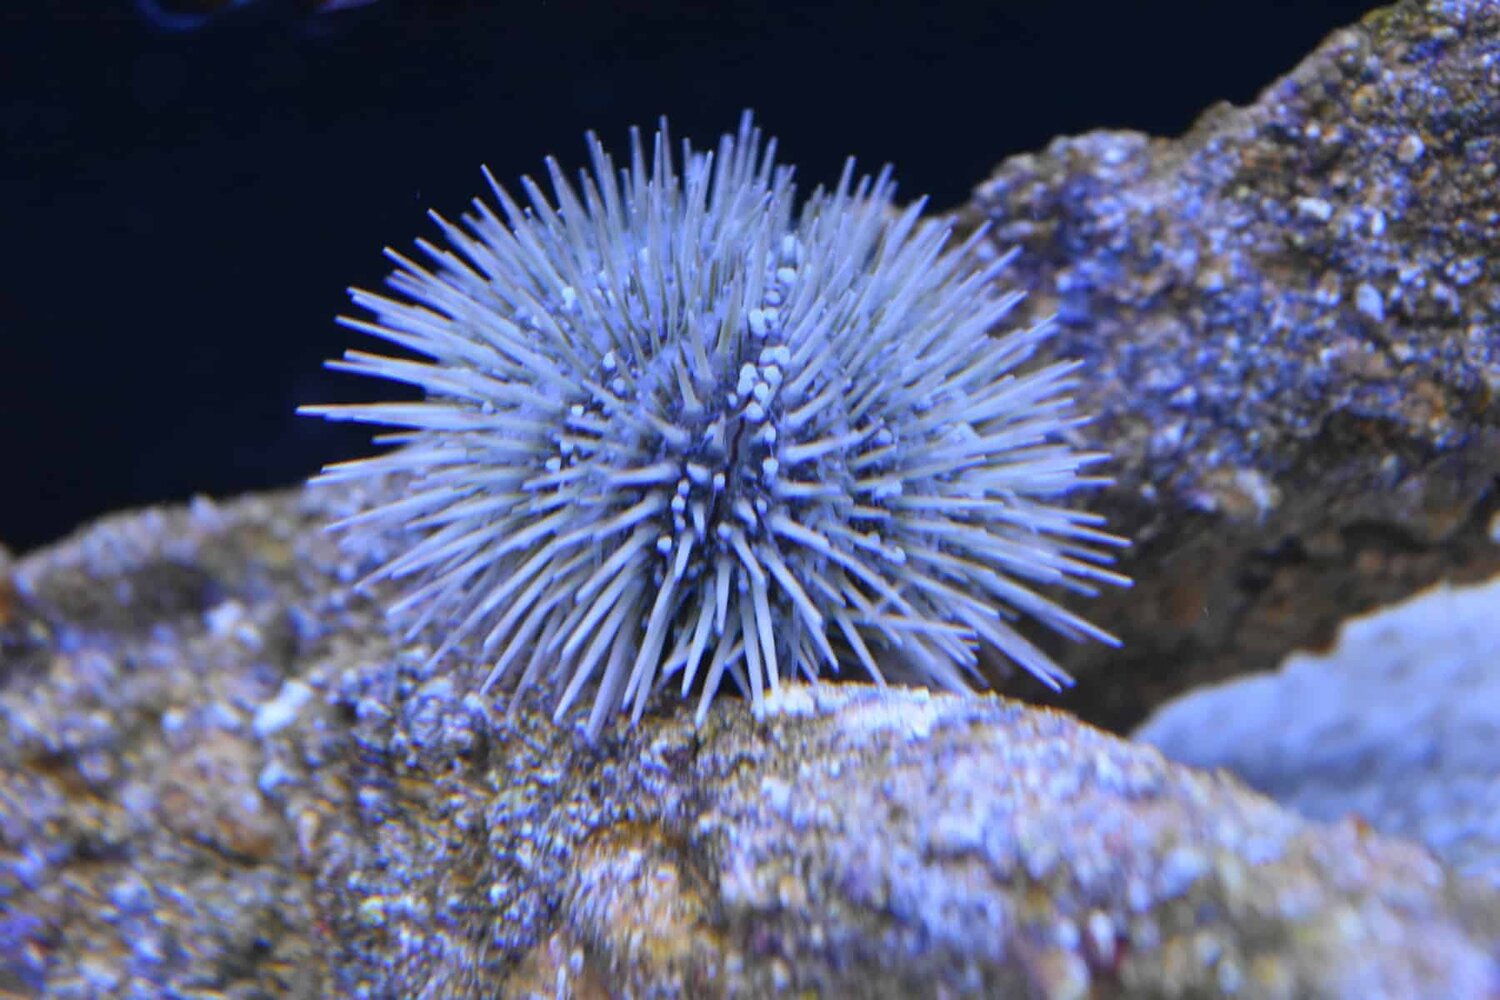 The Pincushion Urchin